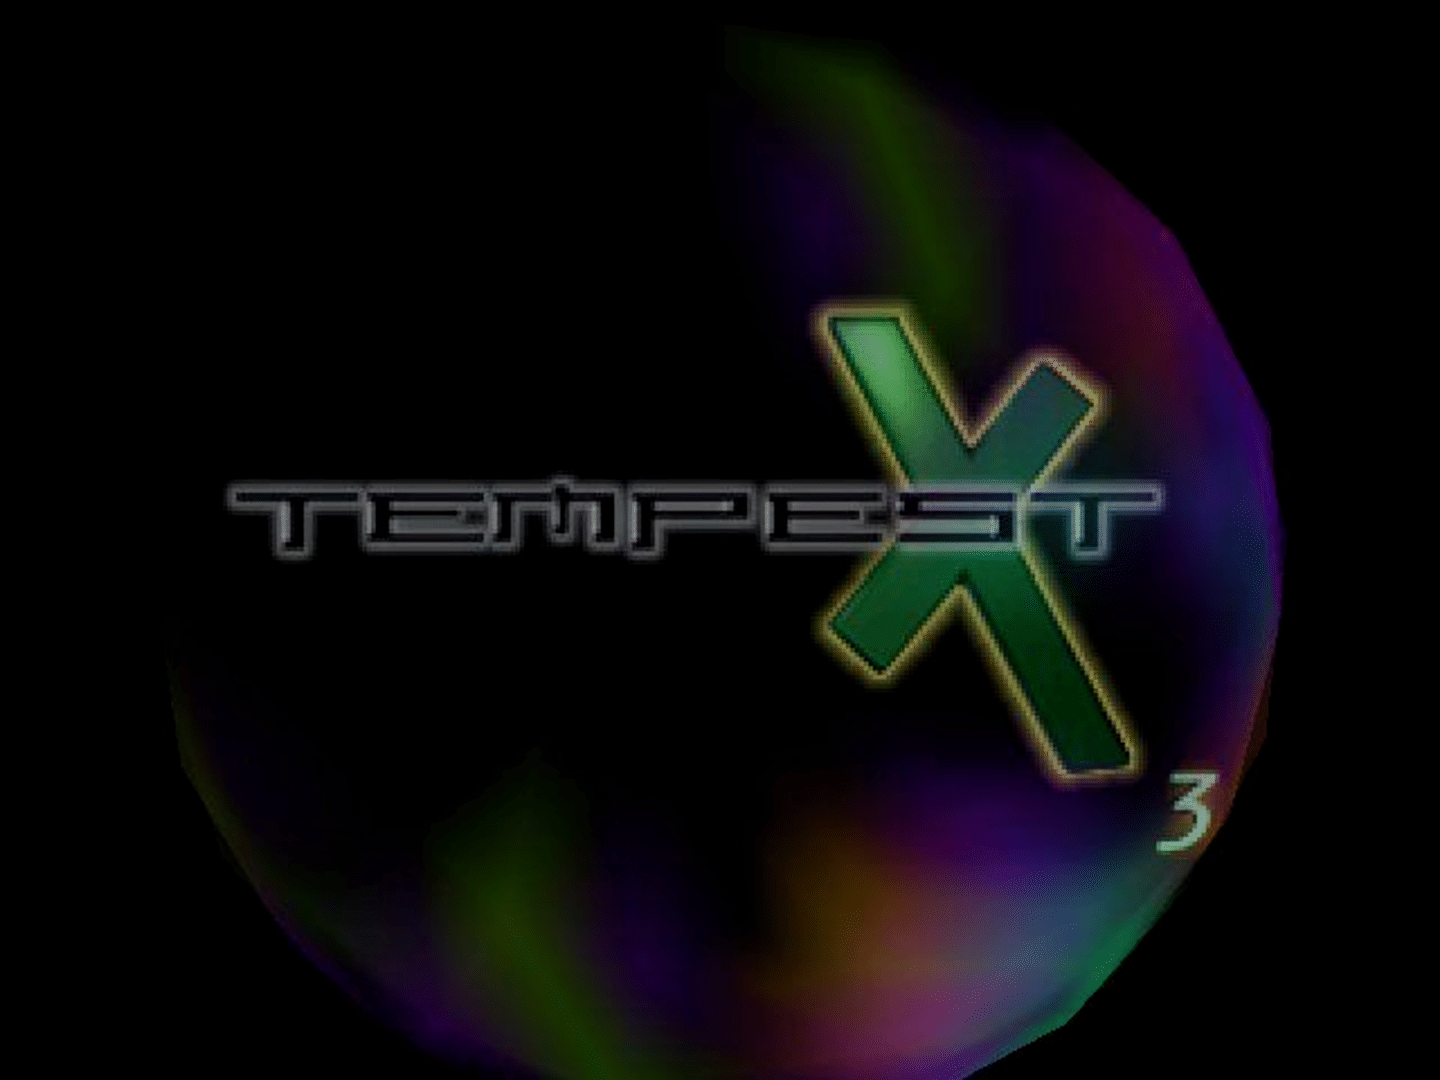 Tempest X3 screenshot